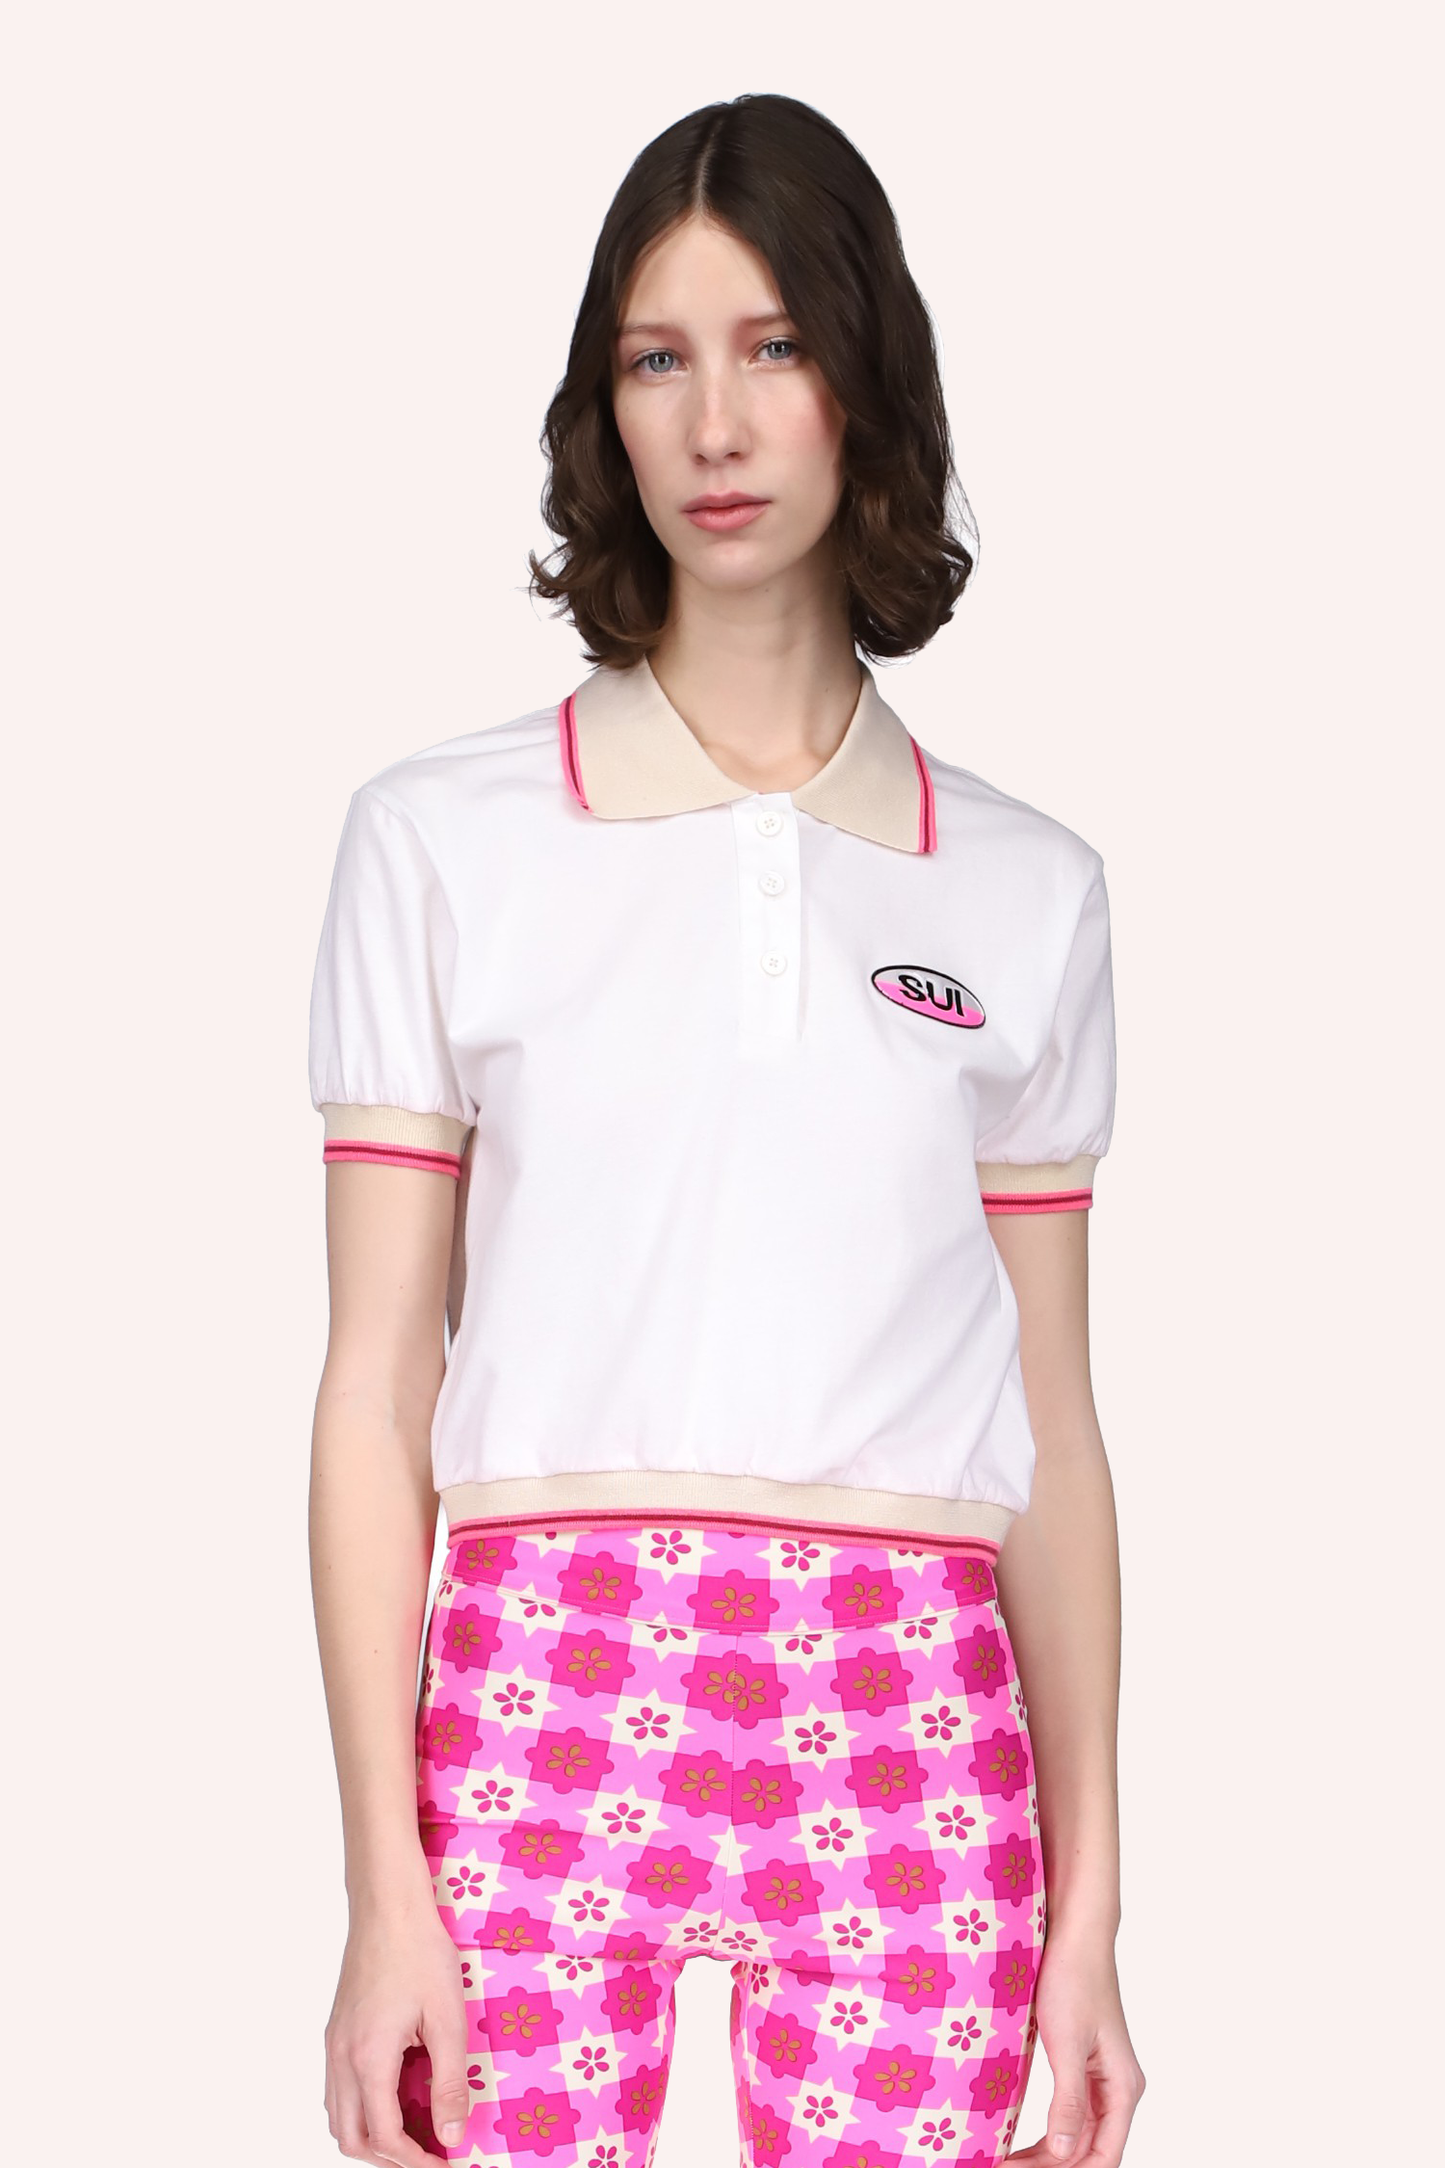 Deco Polo Top Neon Pink, camiseta blanca, costuras con líneas beige y rosa, SUI una etiqueta a la izquierda